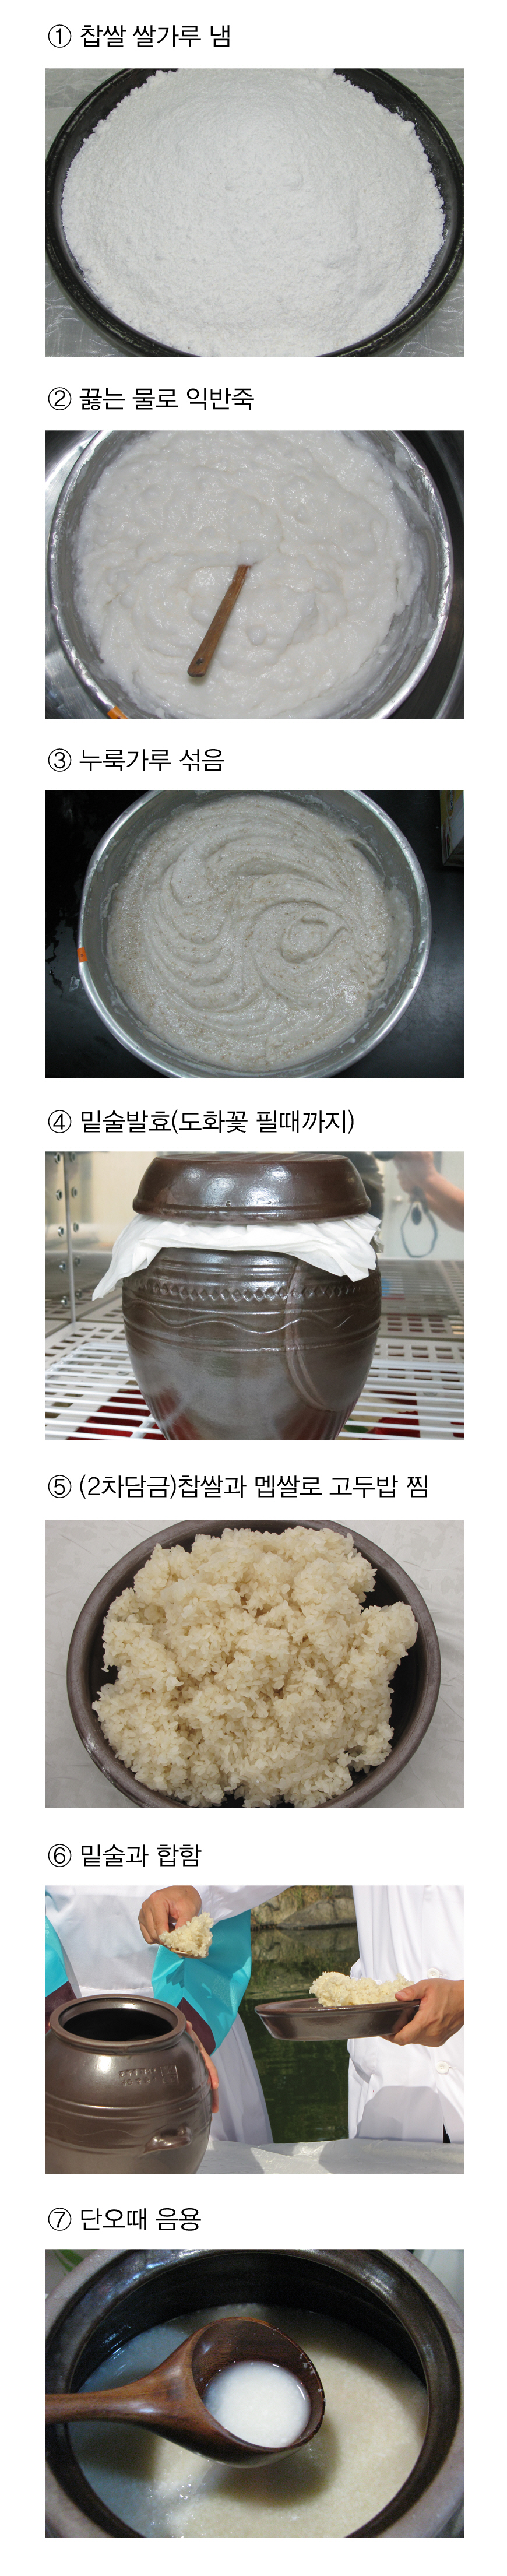 예주 > 수운잡방(의역) 2 전통주 담그는법